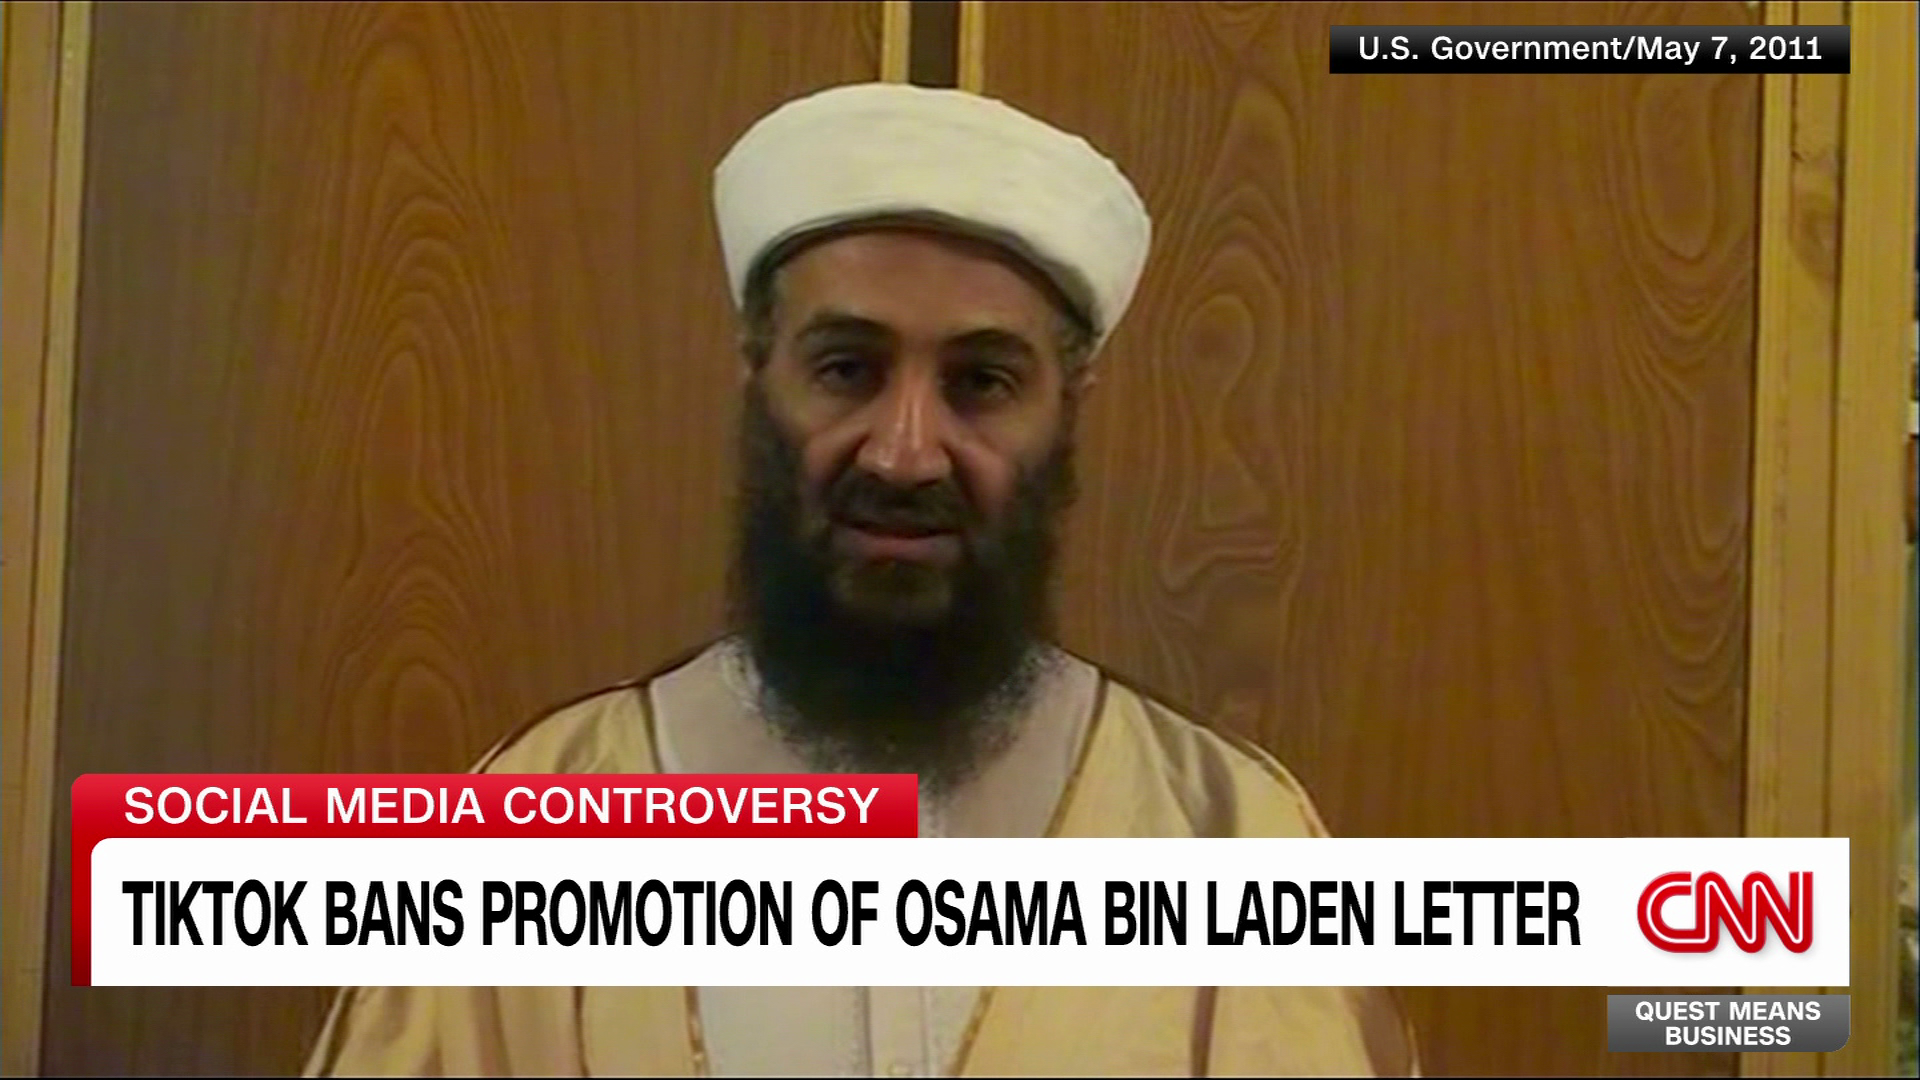 Opeens delen tiktokkers instemmend een oude brief waarin Bin Laden 9/11  goedpraat